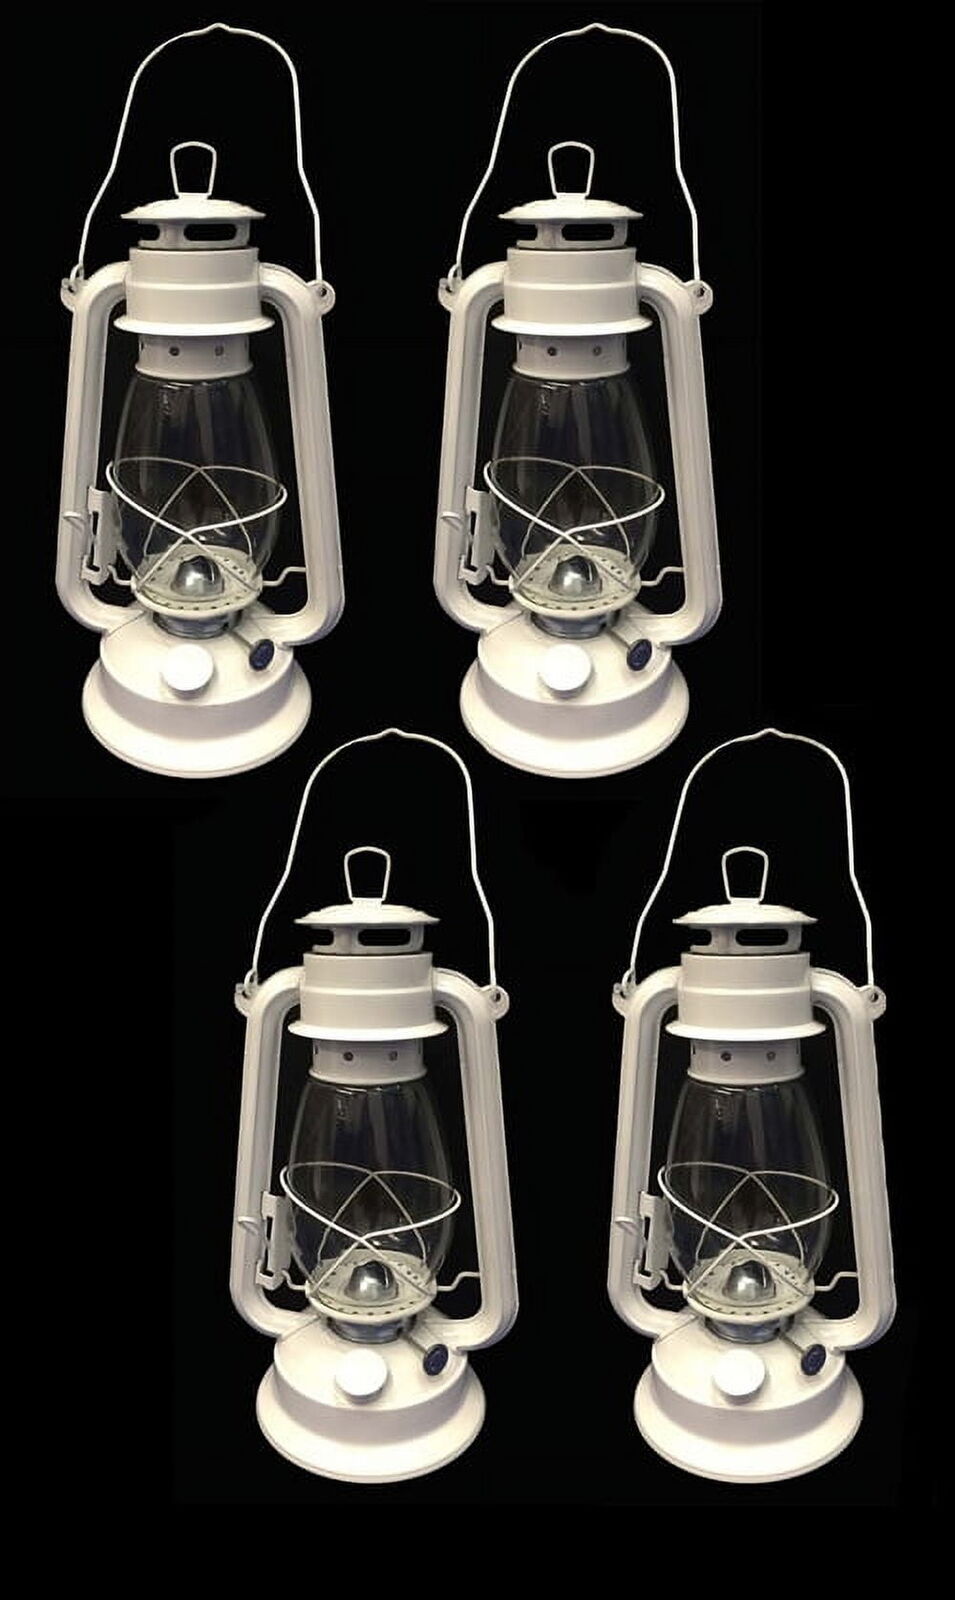 Lot of 4 - 12 Inch White Hurricane Kerosene Lantern Light Table Decorative Lamp